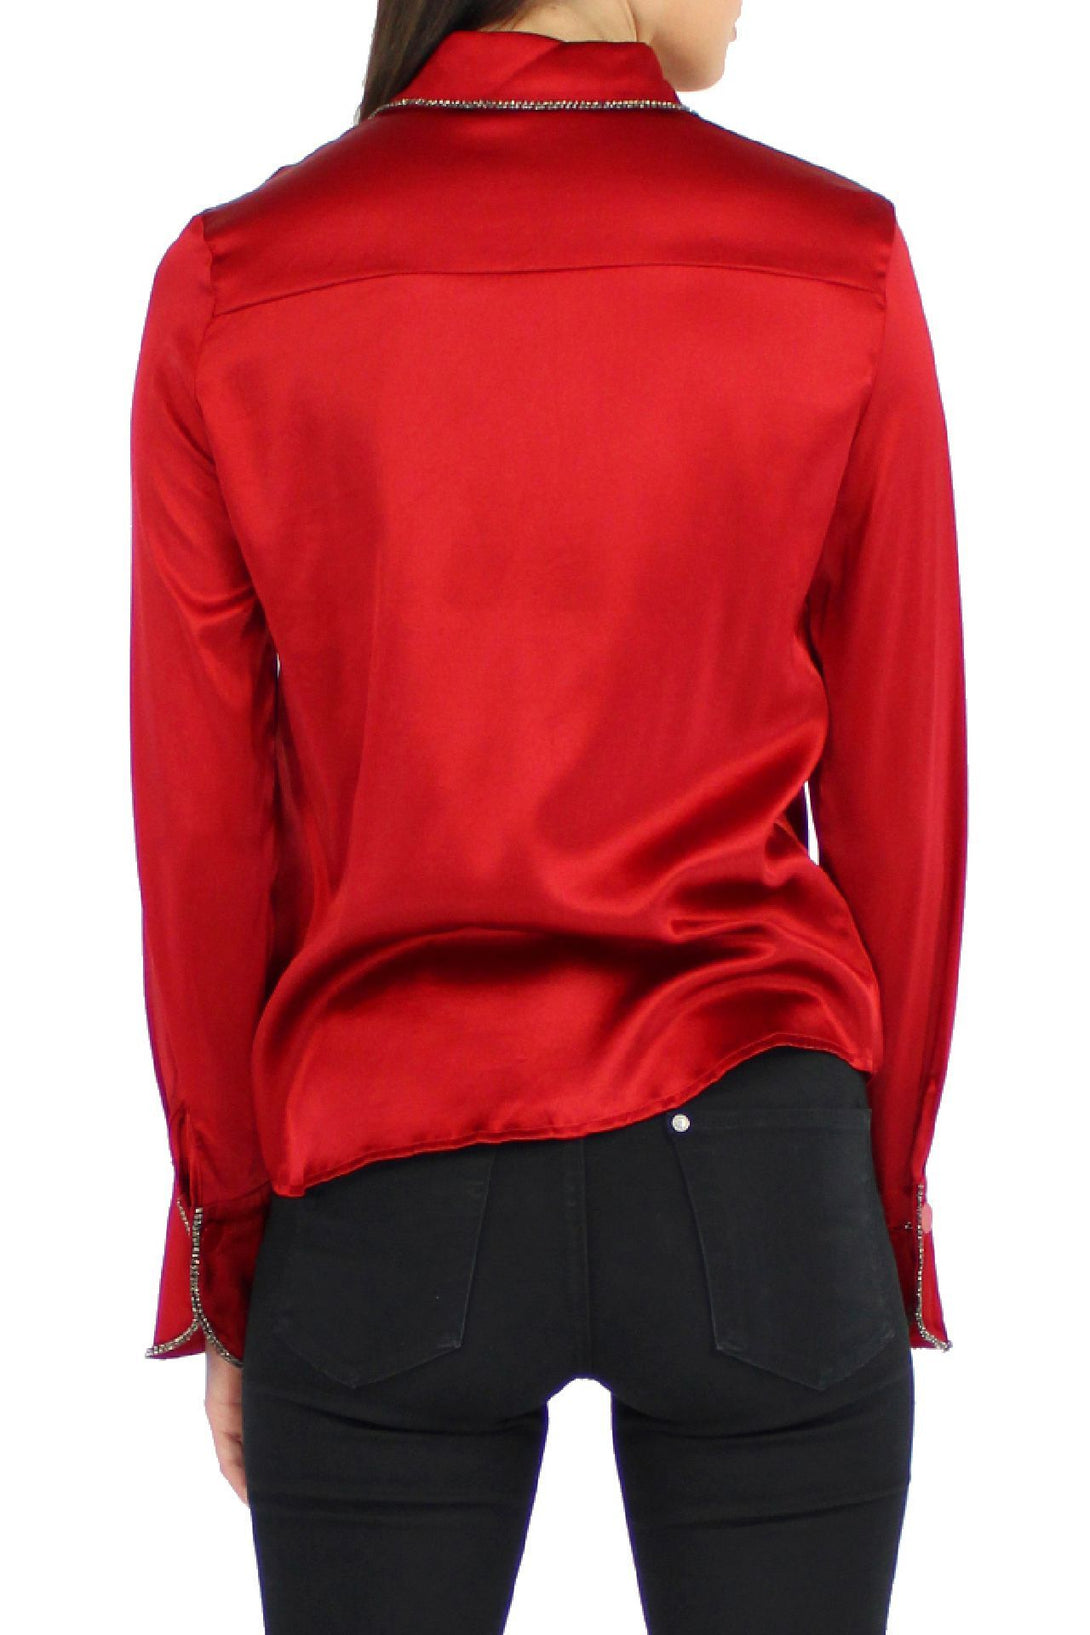 Designer-Buttondown-Shirt-In-Red-By-Kyle-Richard